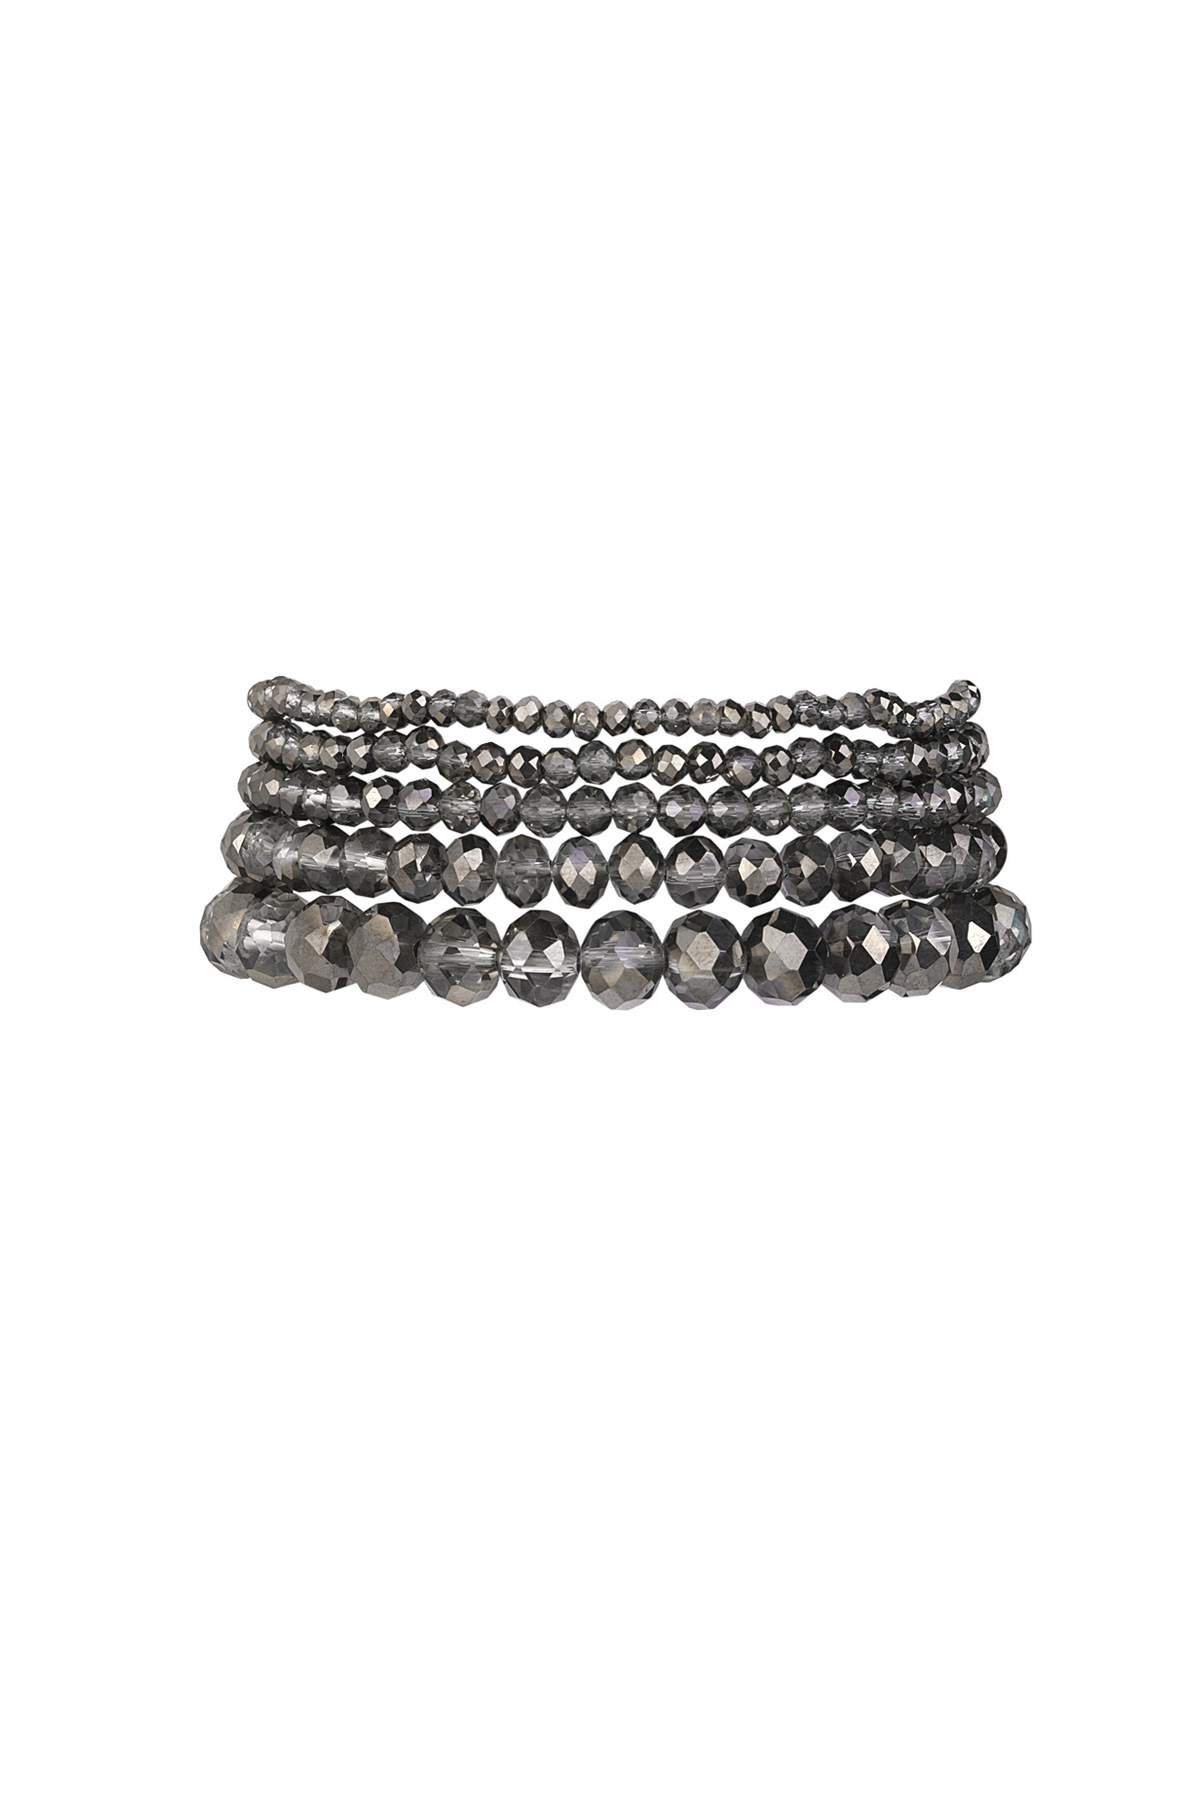 Ensemble de bracelets avec perles de cristal irrégulières - Noir et gris